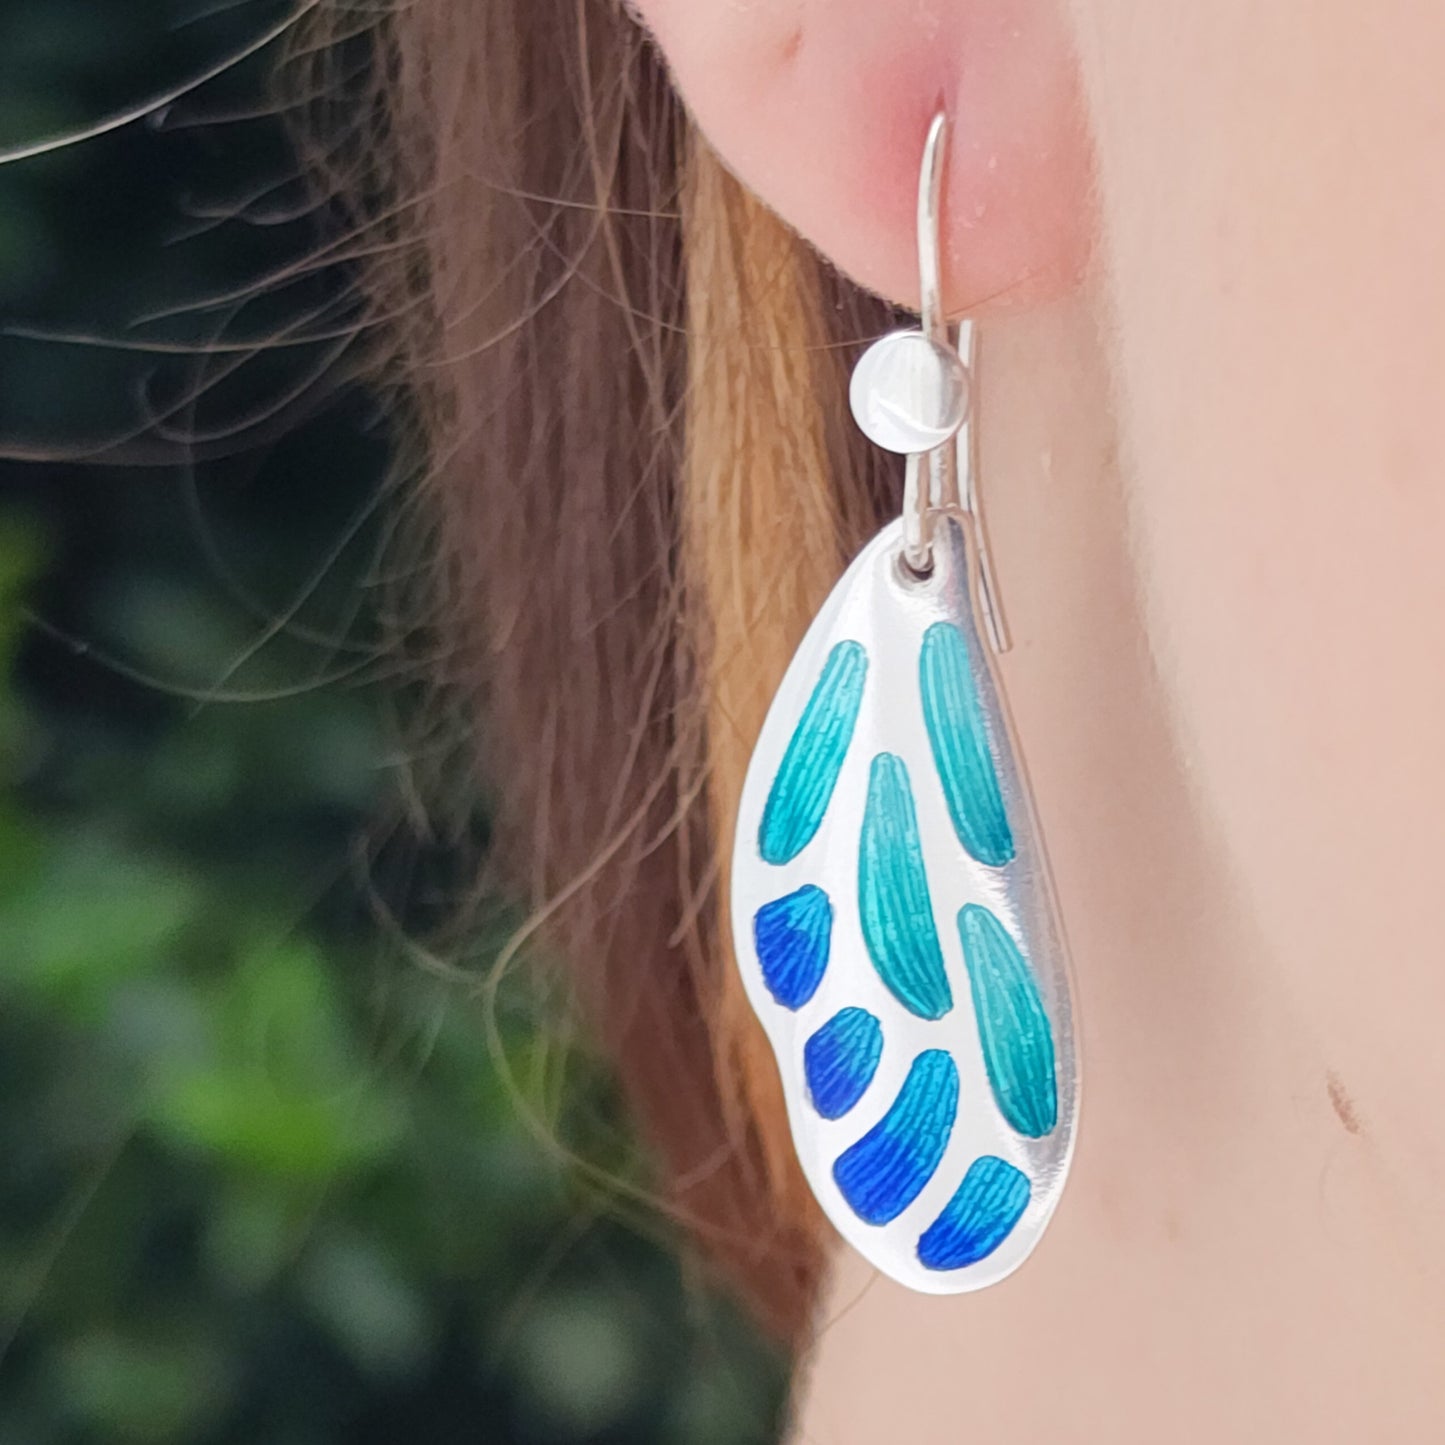 Aqua Blue Butterfly Wing Champleve Silver Earrings